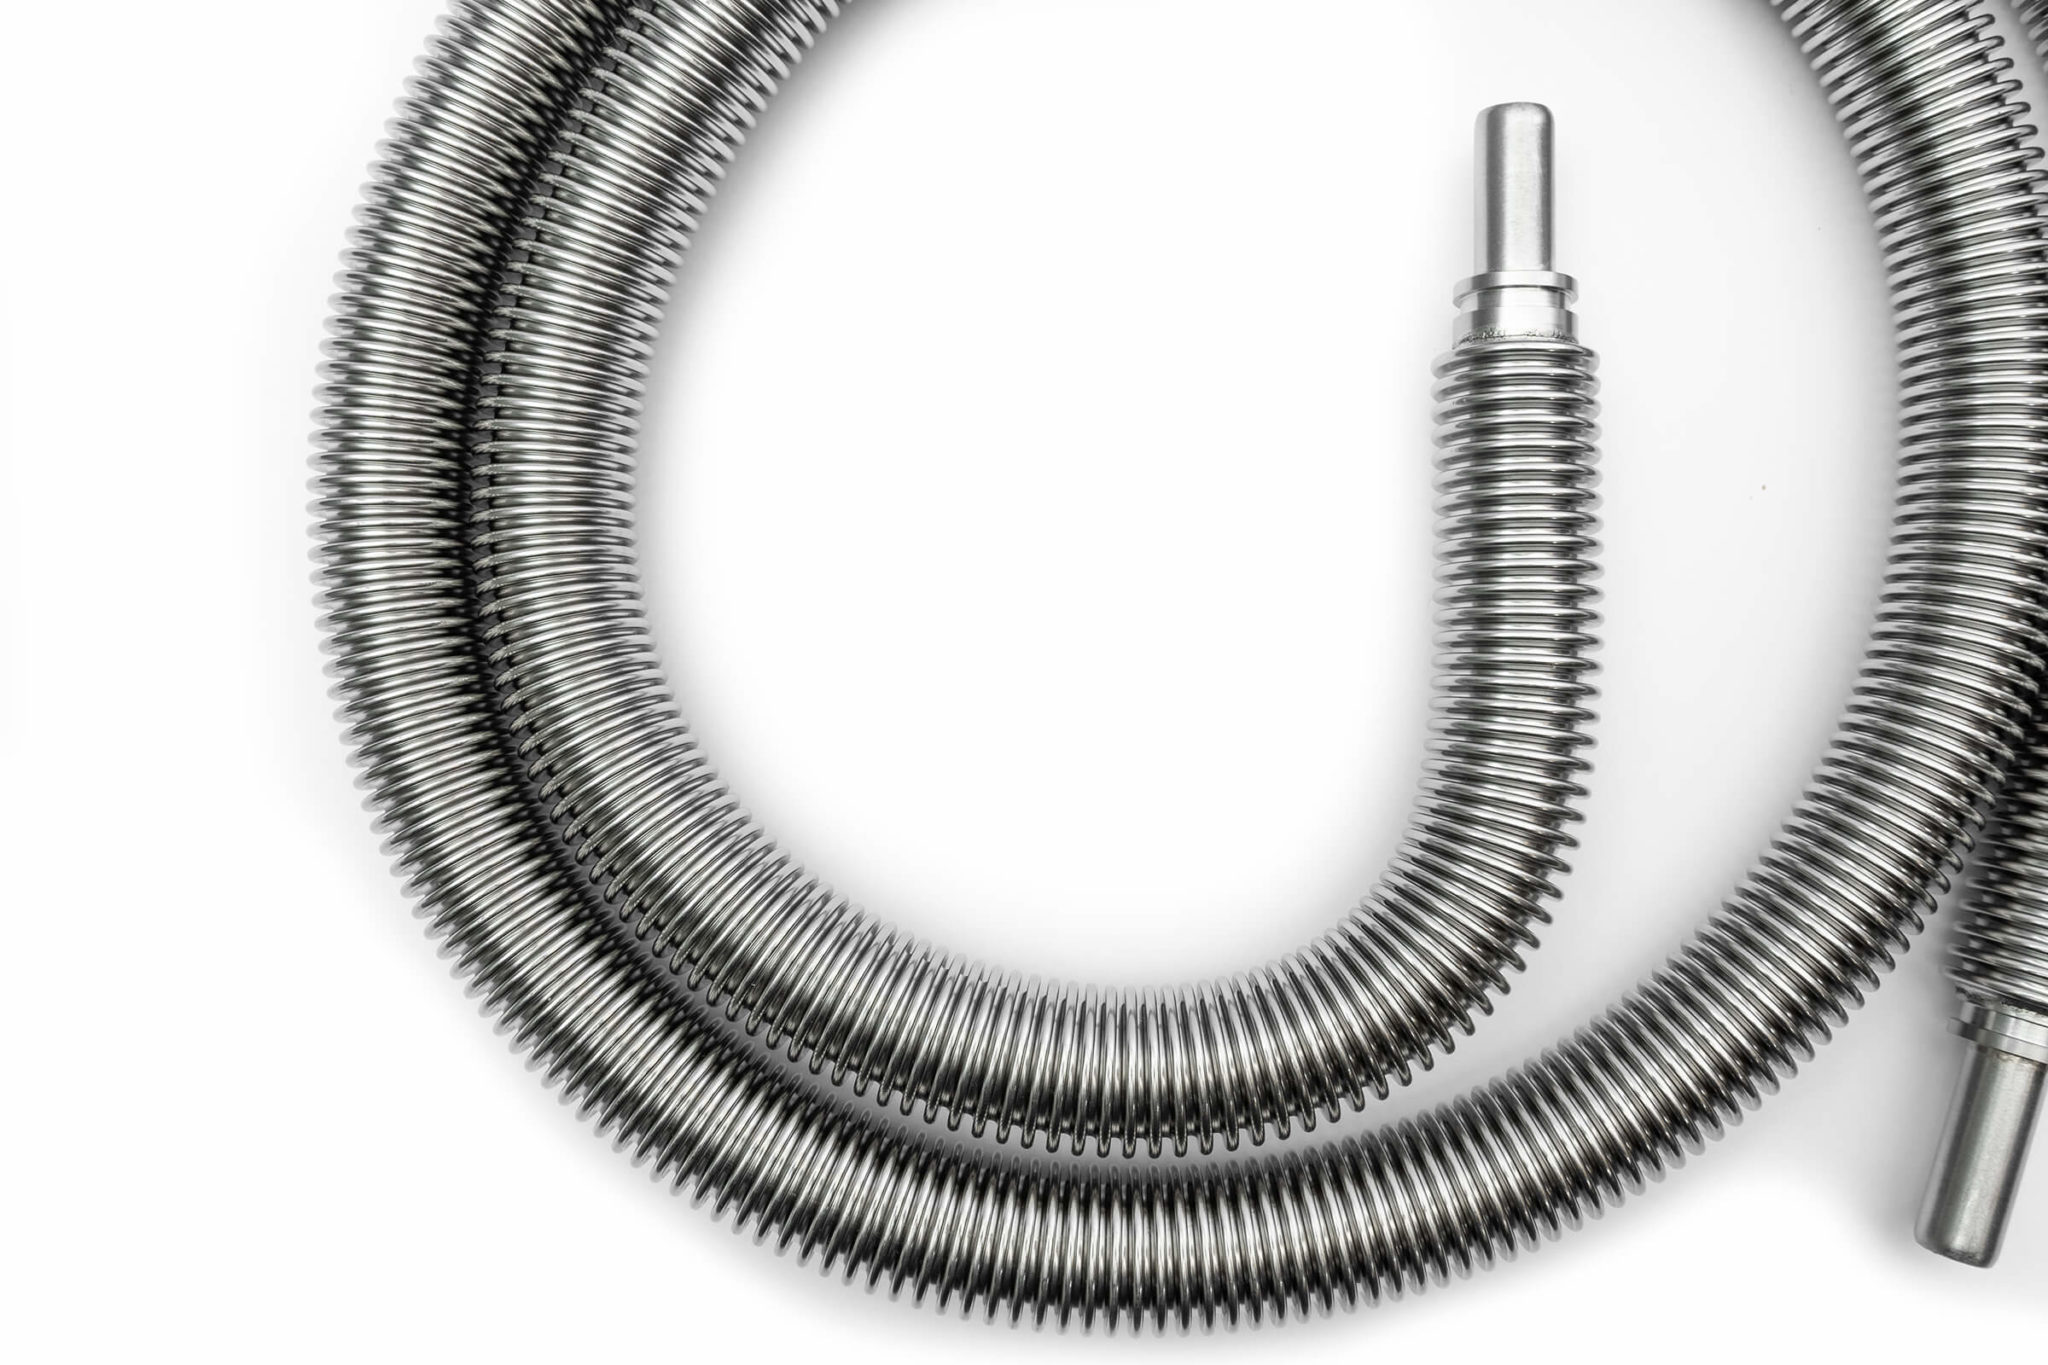 Flexible vacuum insulated hose